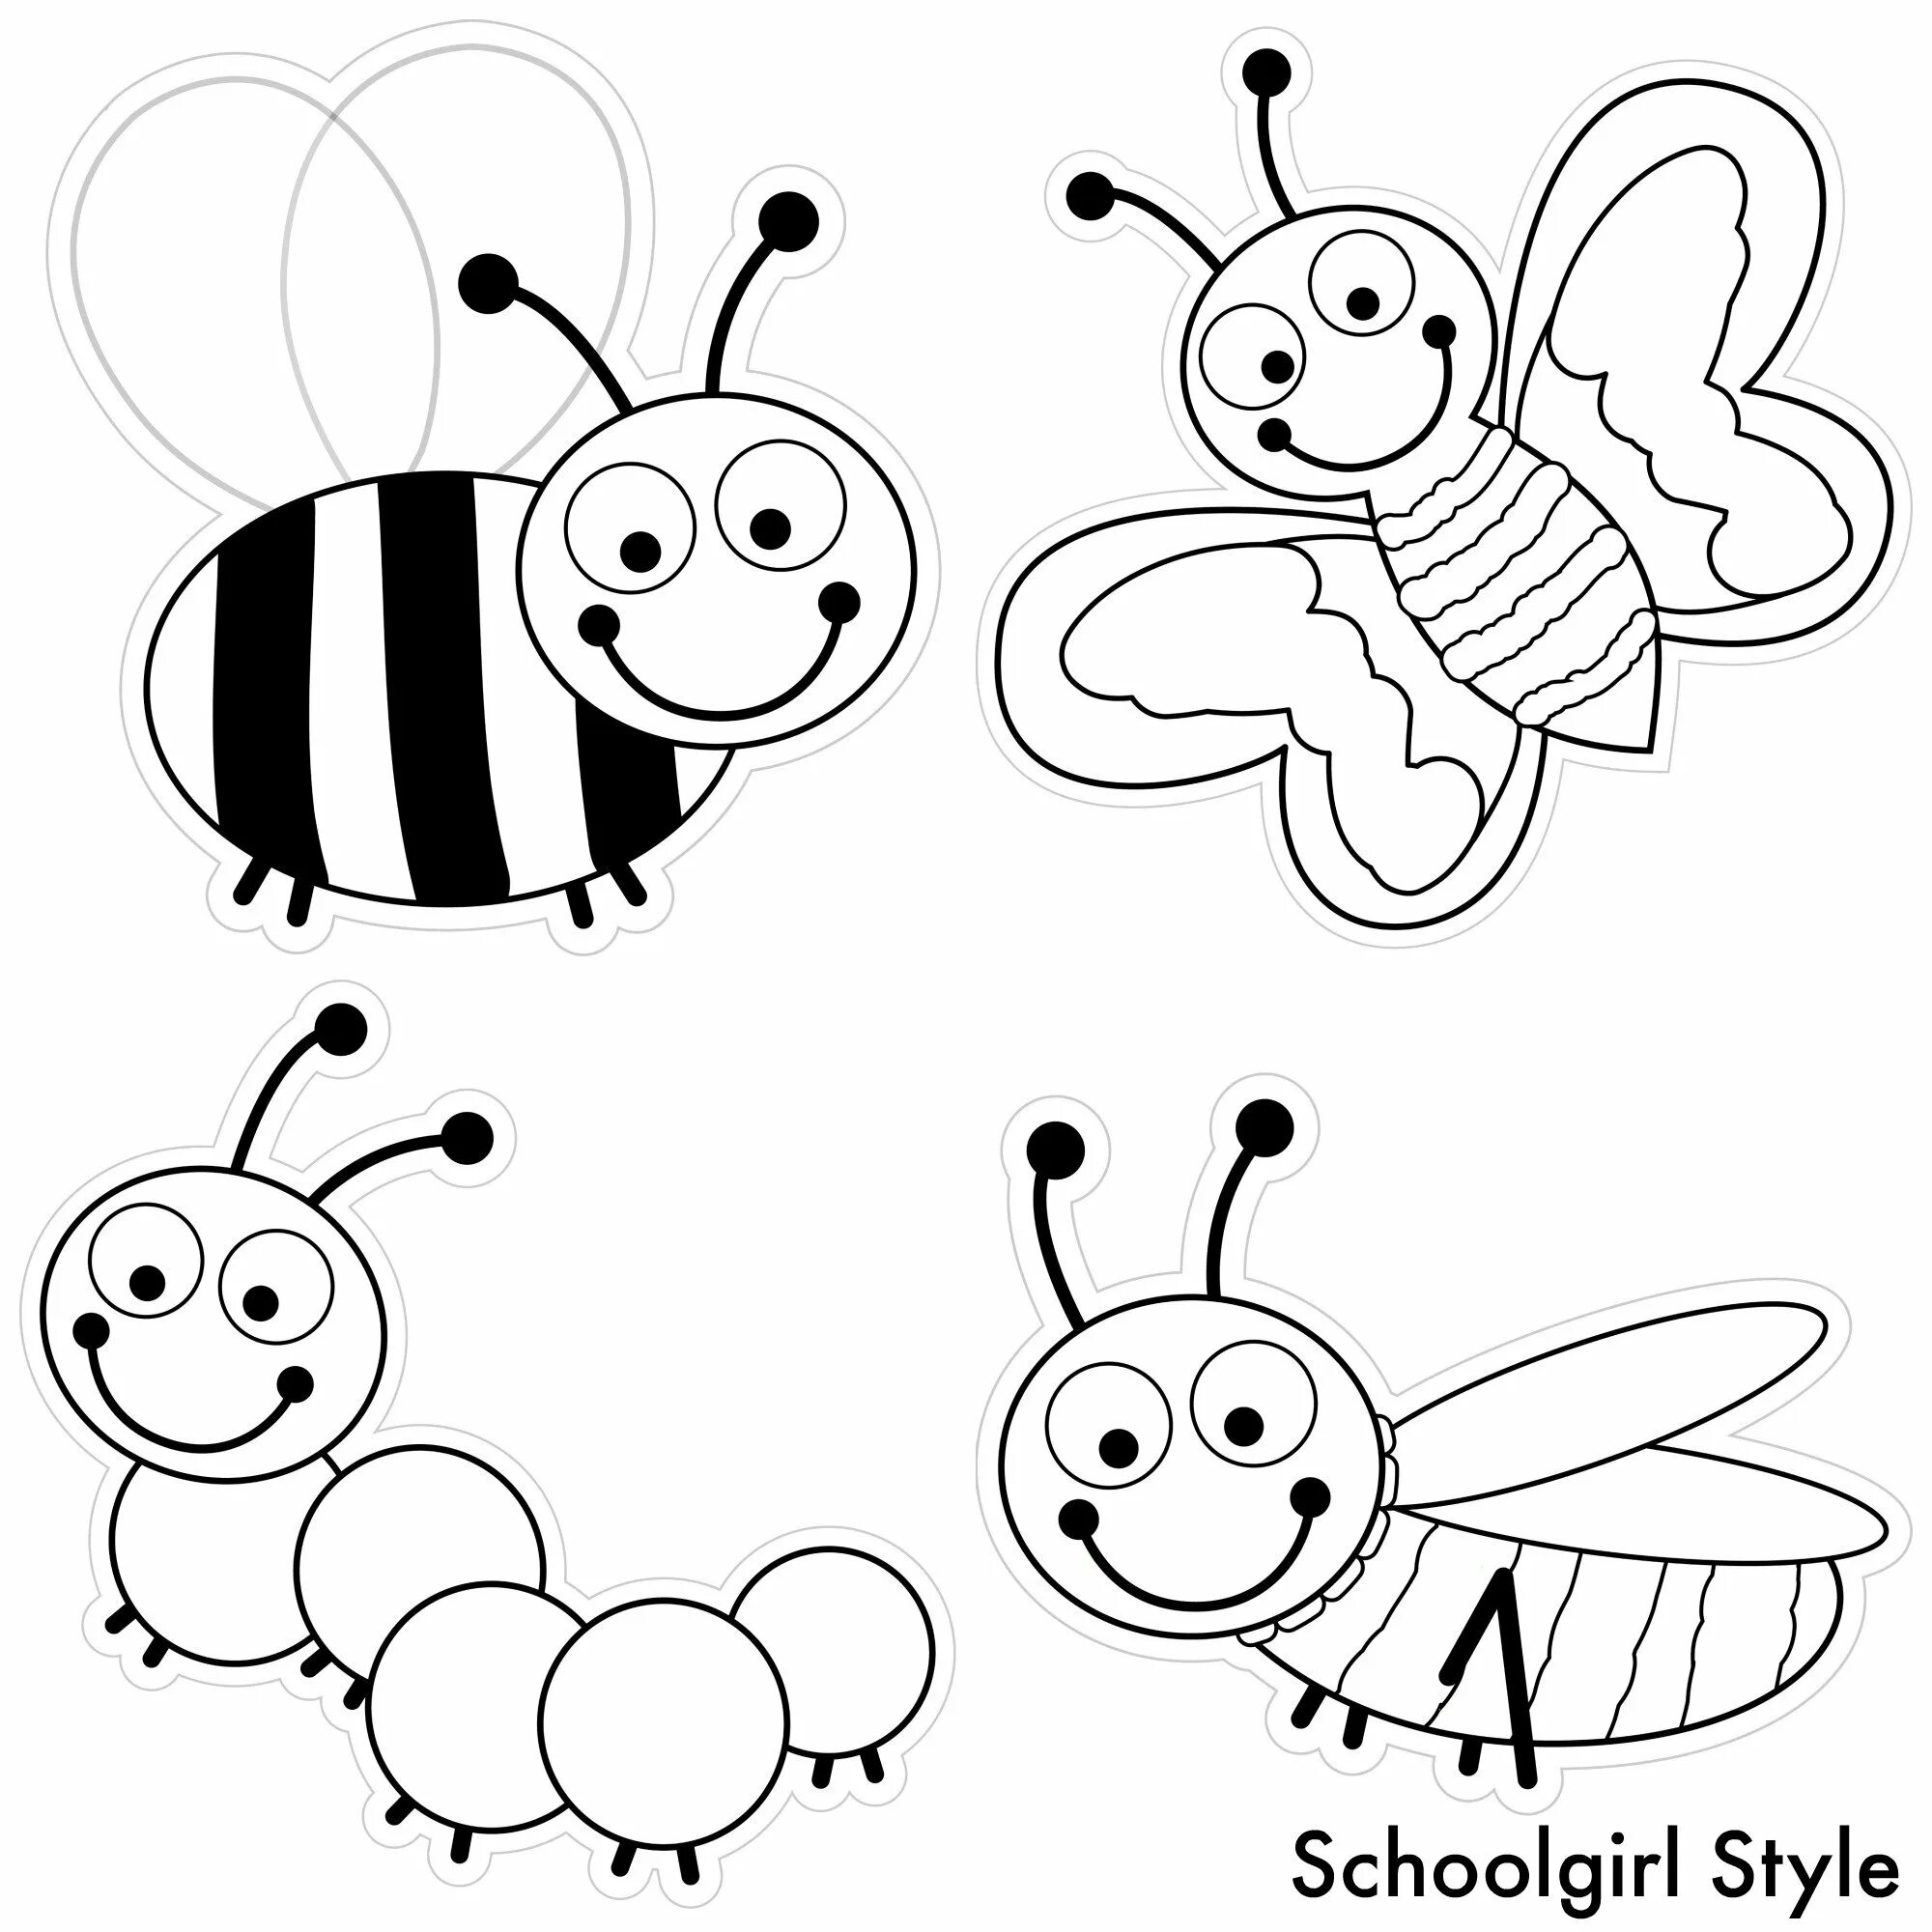 Насекомые раскраска для детей. Раскраска насекомые для малышей. Пчела раскраска для детей. Раскраска насекомые для дошкольников. Раскраска насекомое ребенку 4 года